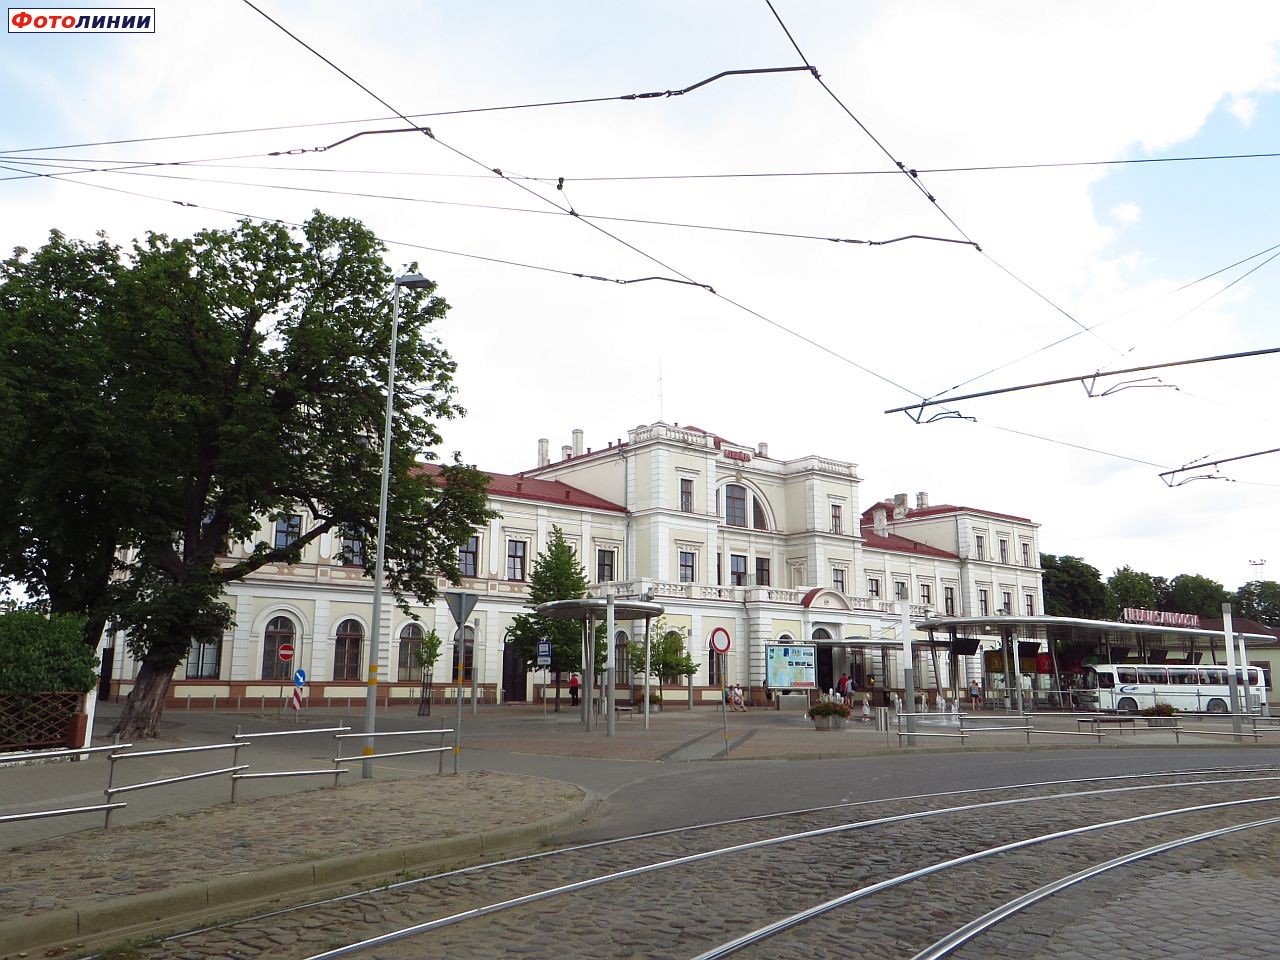 Вид на вокзал со стороны города